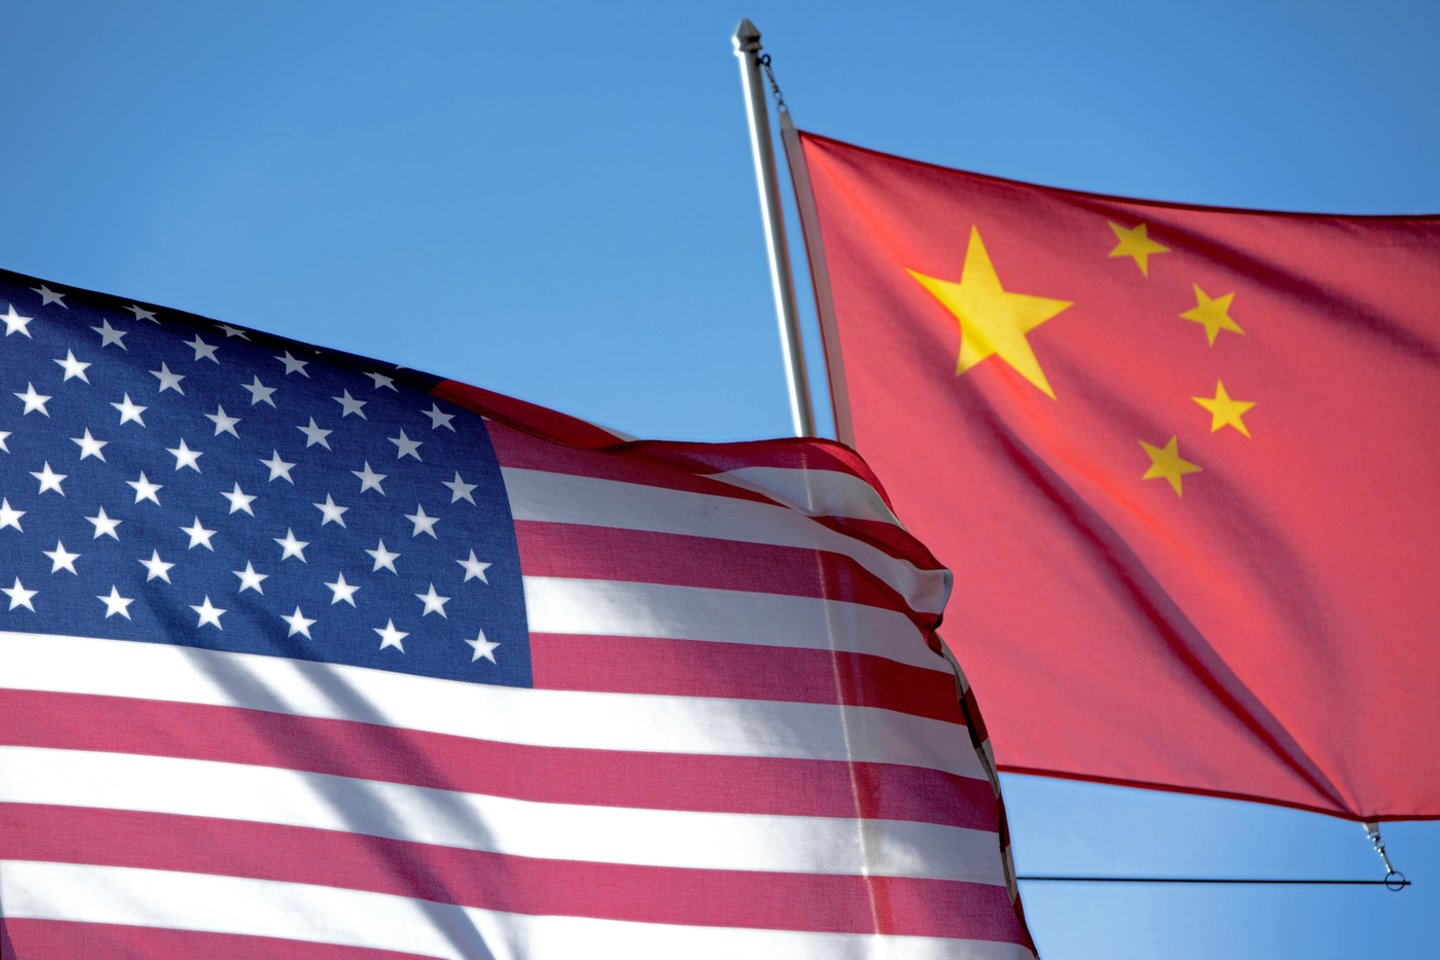 ​Jungtinės Valstijos nurodė Kinijai uždaryti savo konsulatą Hjustone, trečiadienį paskelbė Pekinas, pavadinęs tai „politine provokacija“, dar labiau pakenksiančia diplomatiniams santykiams.<br>imago/Scanpix nuotr.